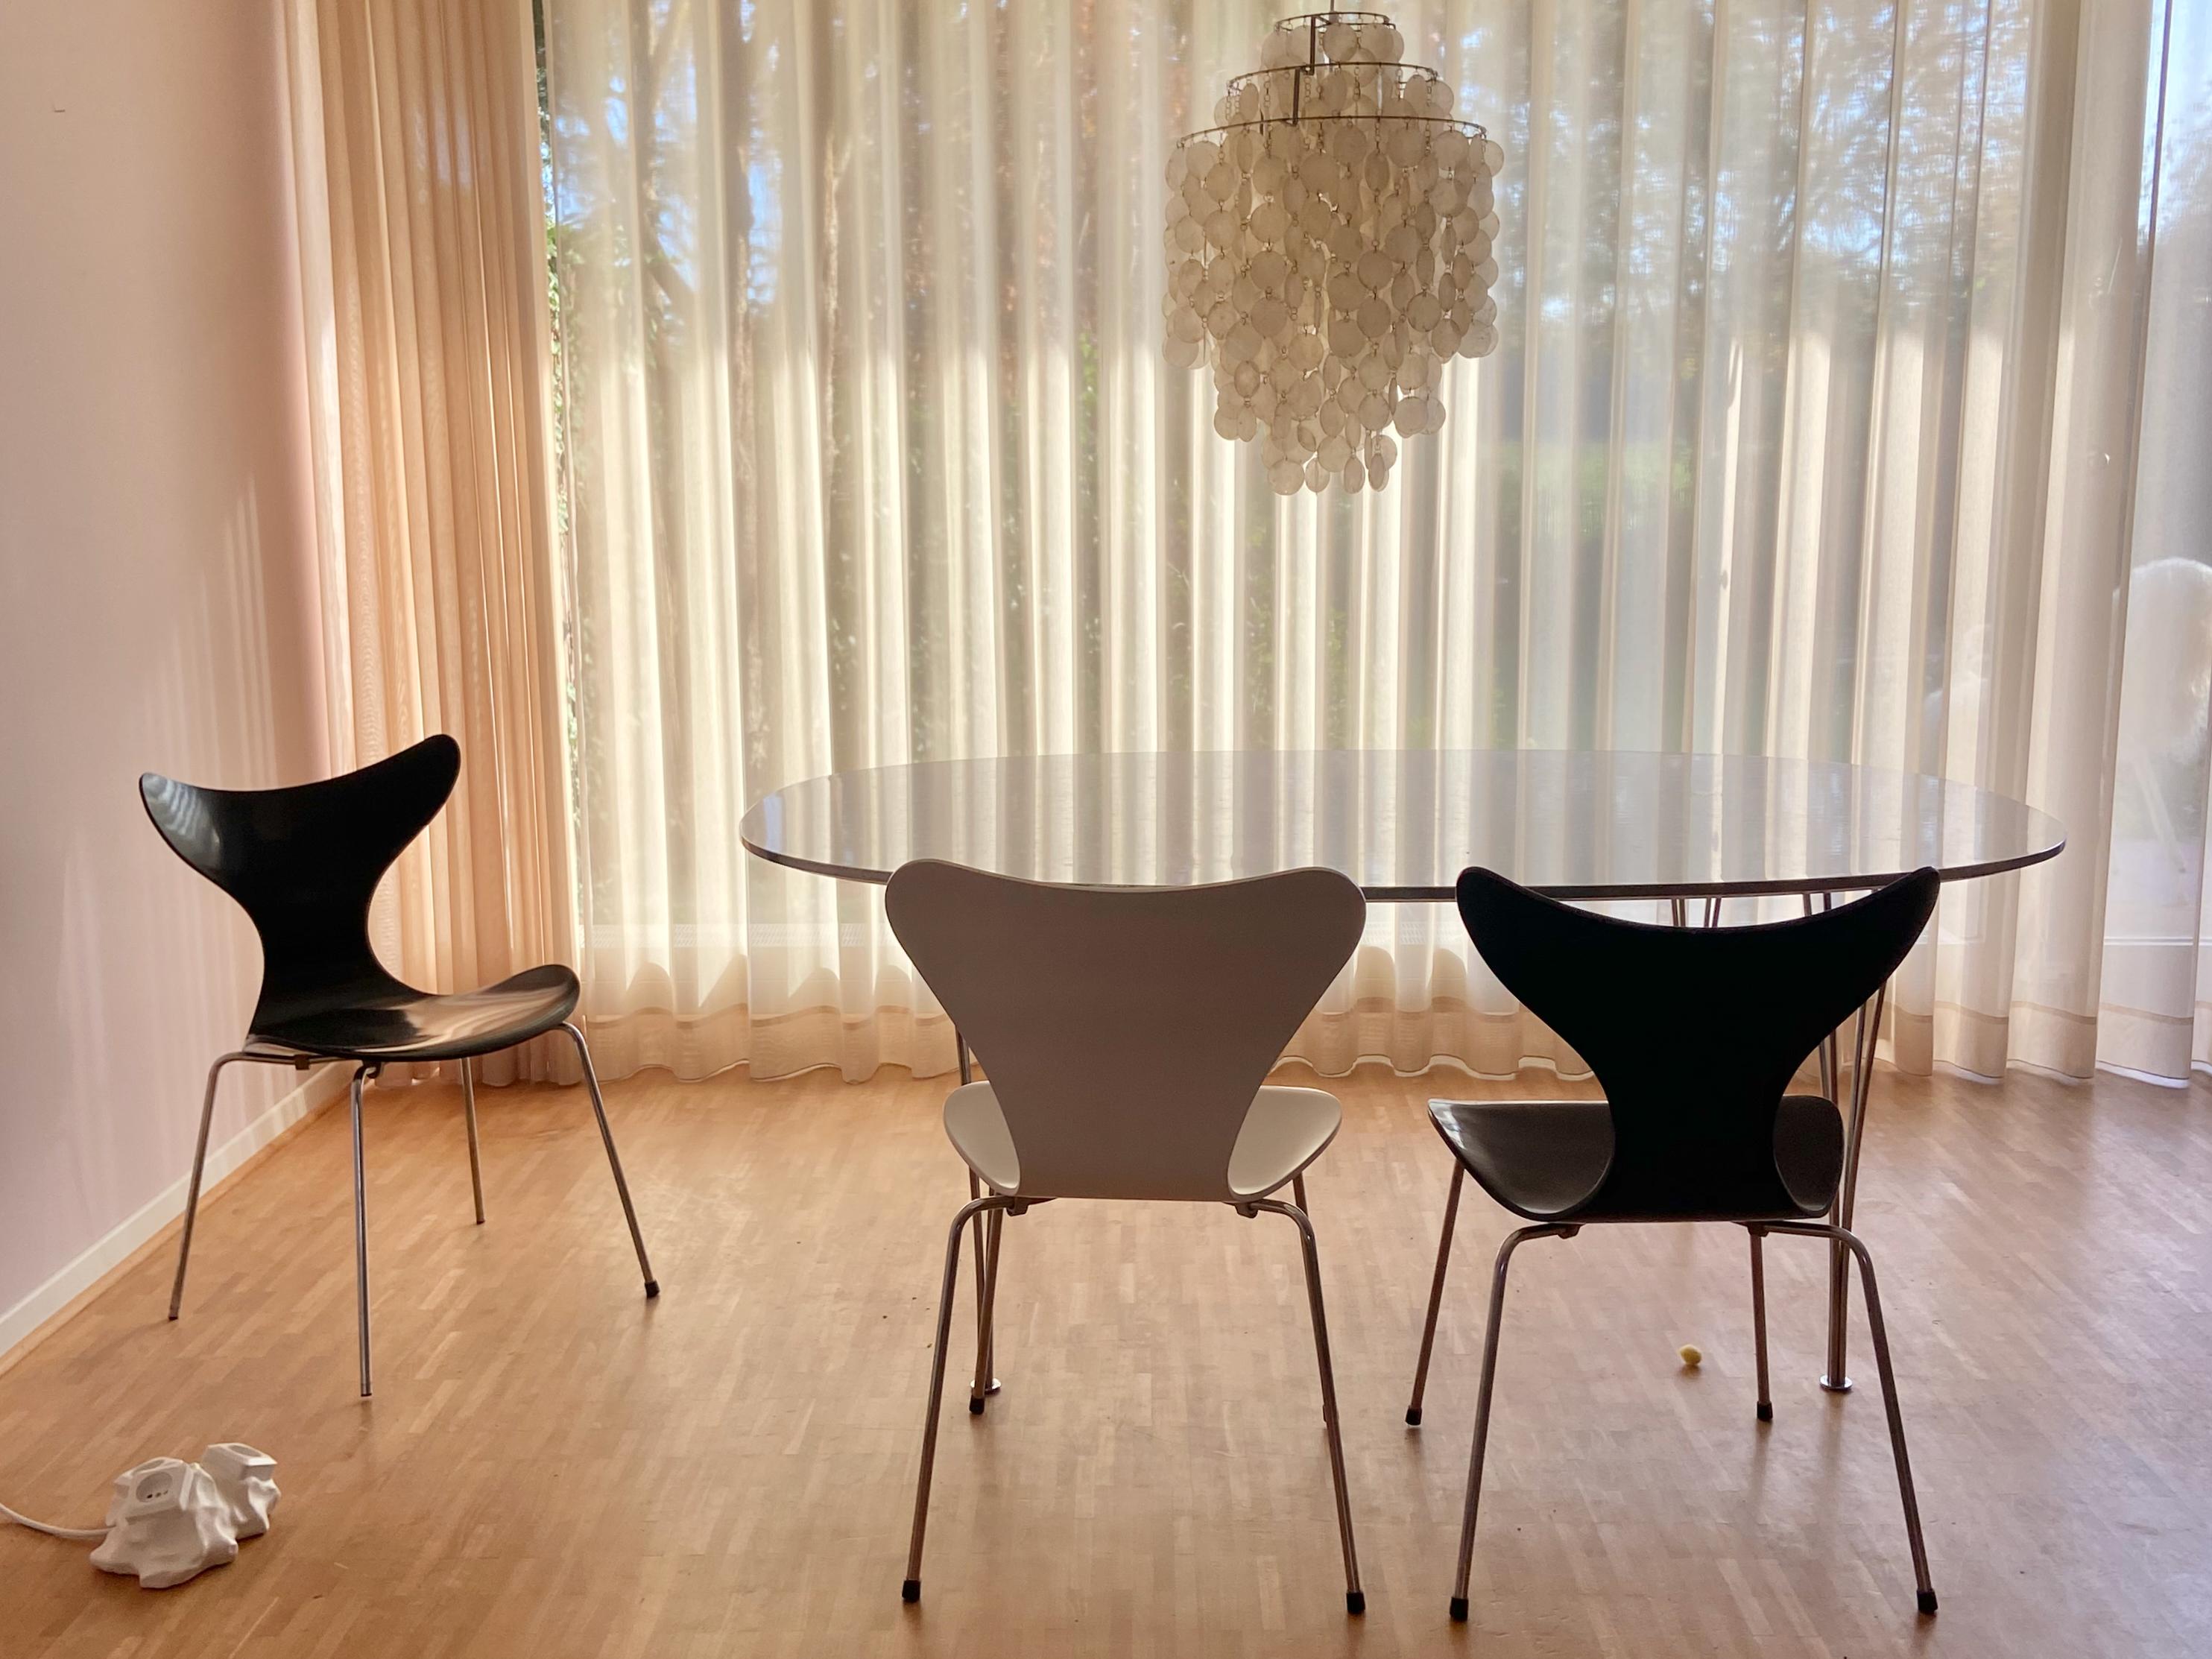 Seltener mod. 3108 oder Seagull Esszimmerstuhl von Arne Jacobsen für Fritz Hansen, Dänemark. 
Der Stuhl FH3108 wurde für die dänische Nationalbank entworfen und war zugleich die letzte Designarbeit von Arne Jacobsen. 

Der Stuhl ist im